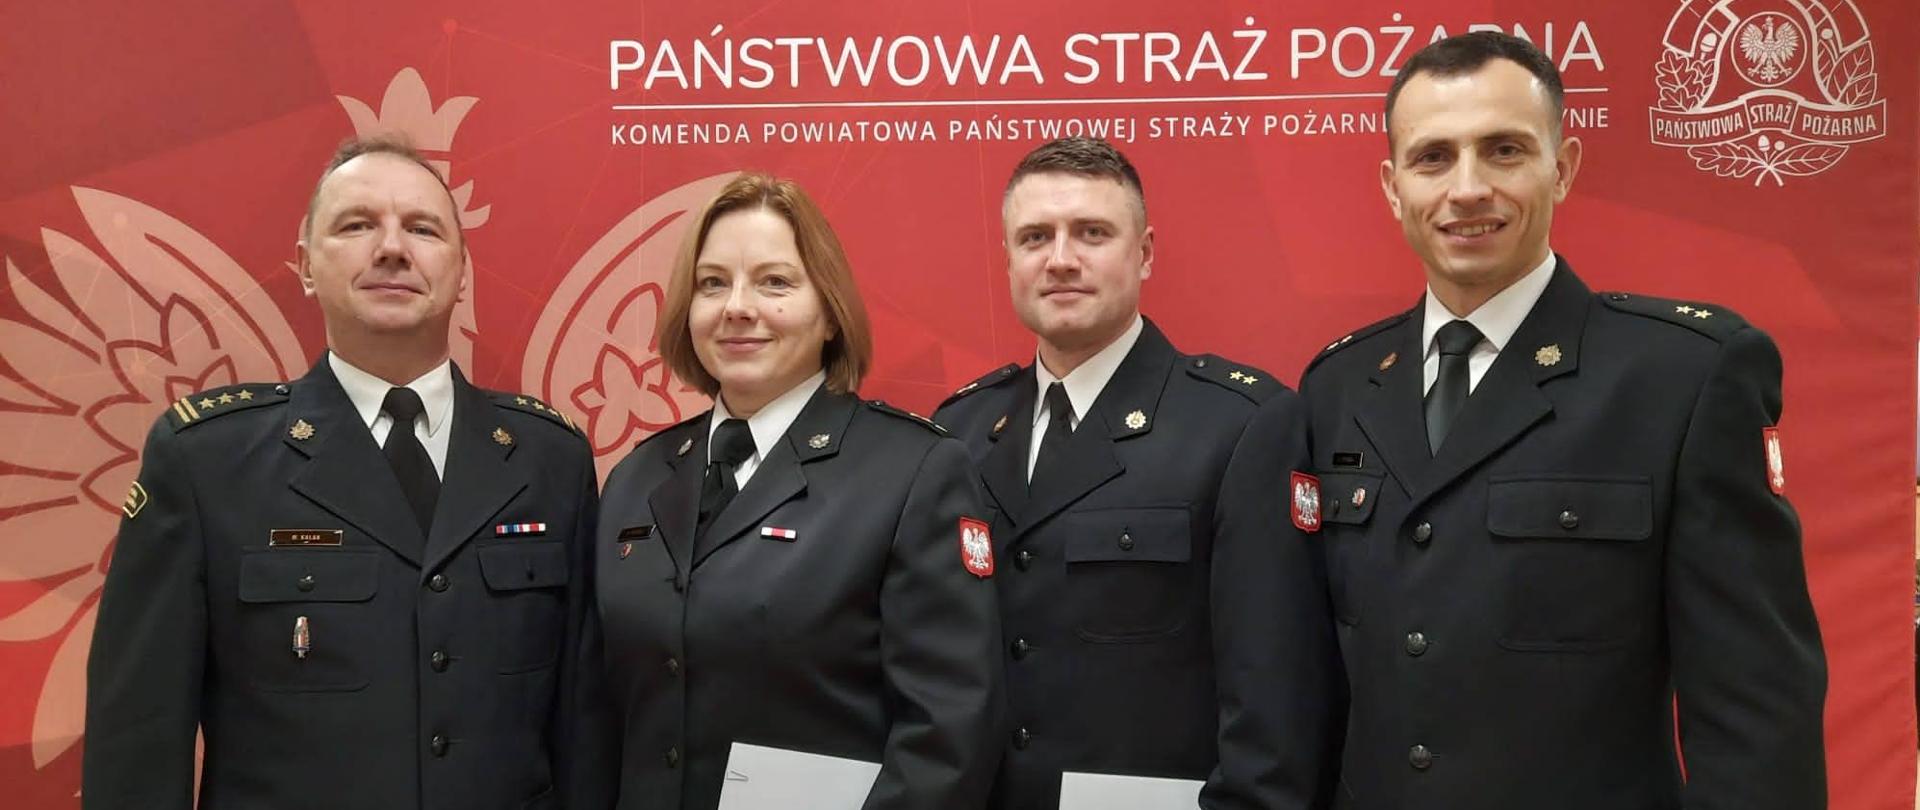 Na świetlicy komendy powiatowej zdjęcie grupowe awansowanych funkcjonariuszy z komendantem powiatowym PSP w Krotoszynie. Zdjęcie wykonane w umundurowaniu galowym na tle baneru Państwowej Straży Pożarnej